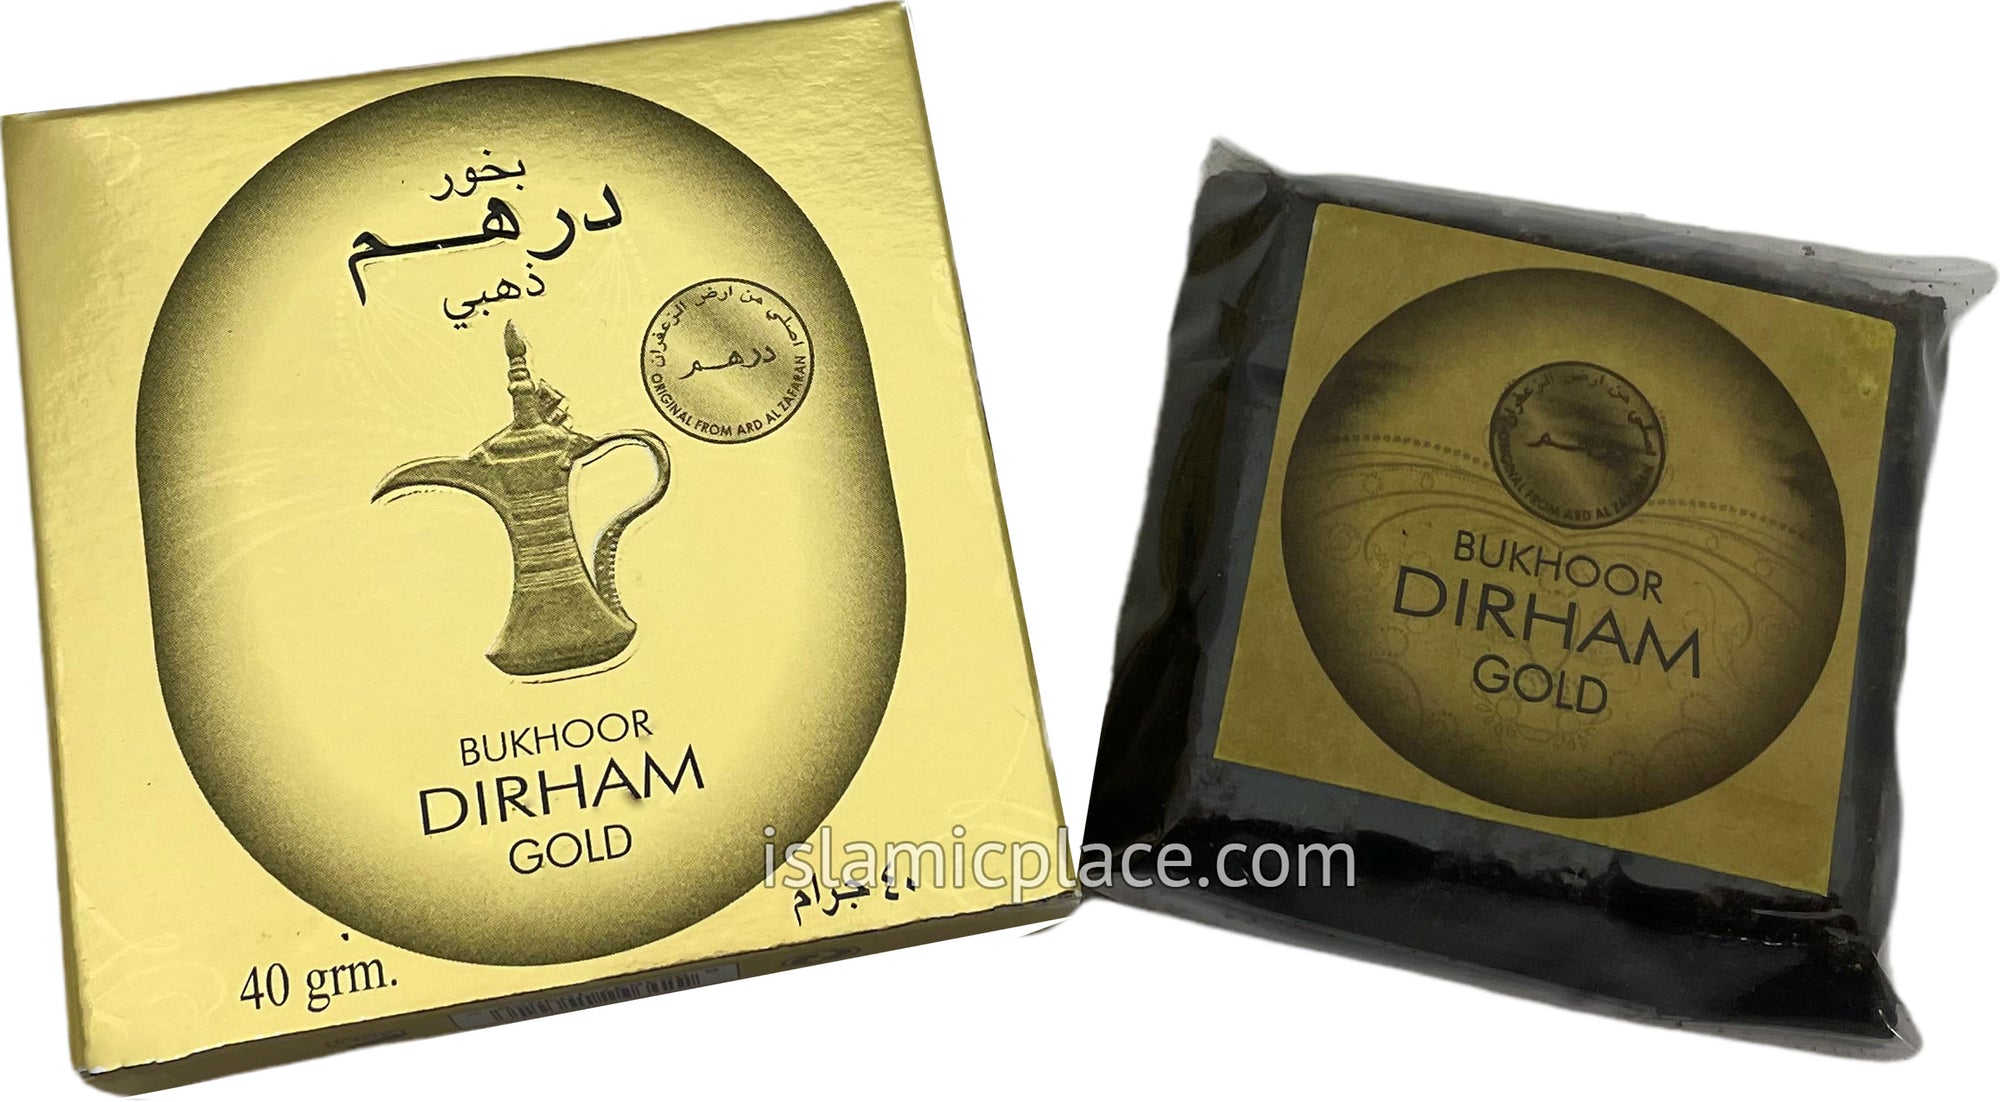 Bukhoor Dirham Gold Incense